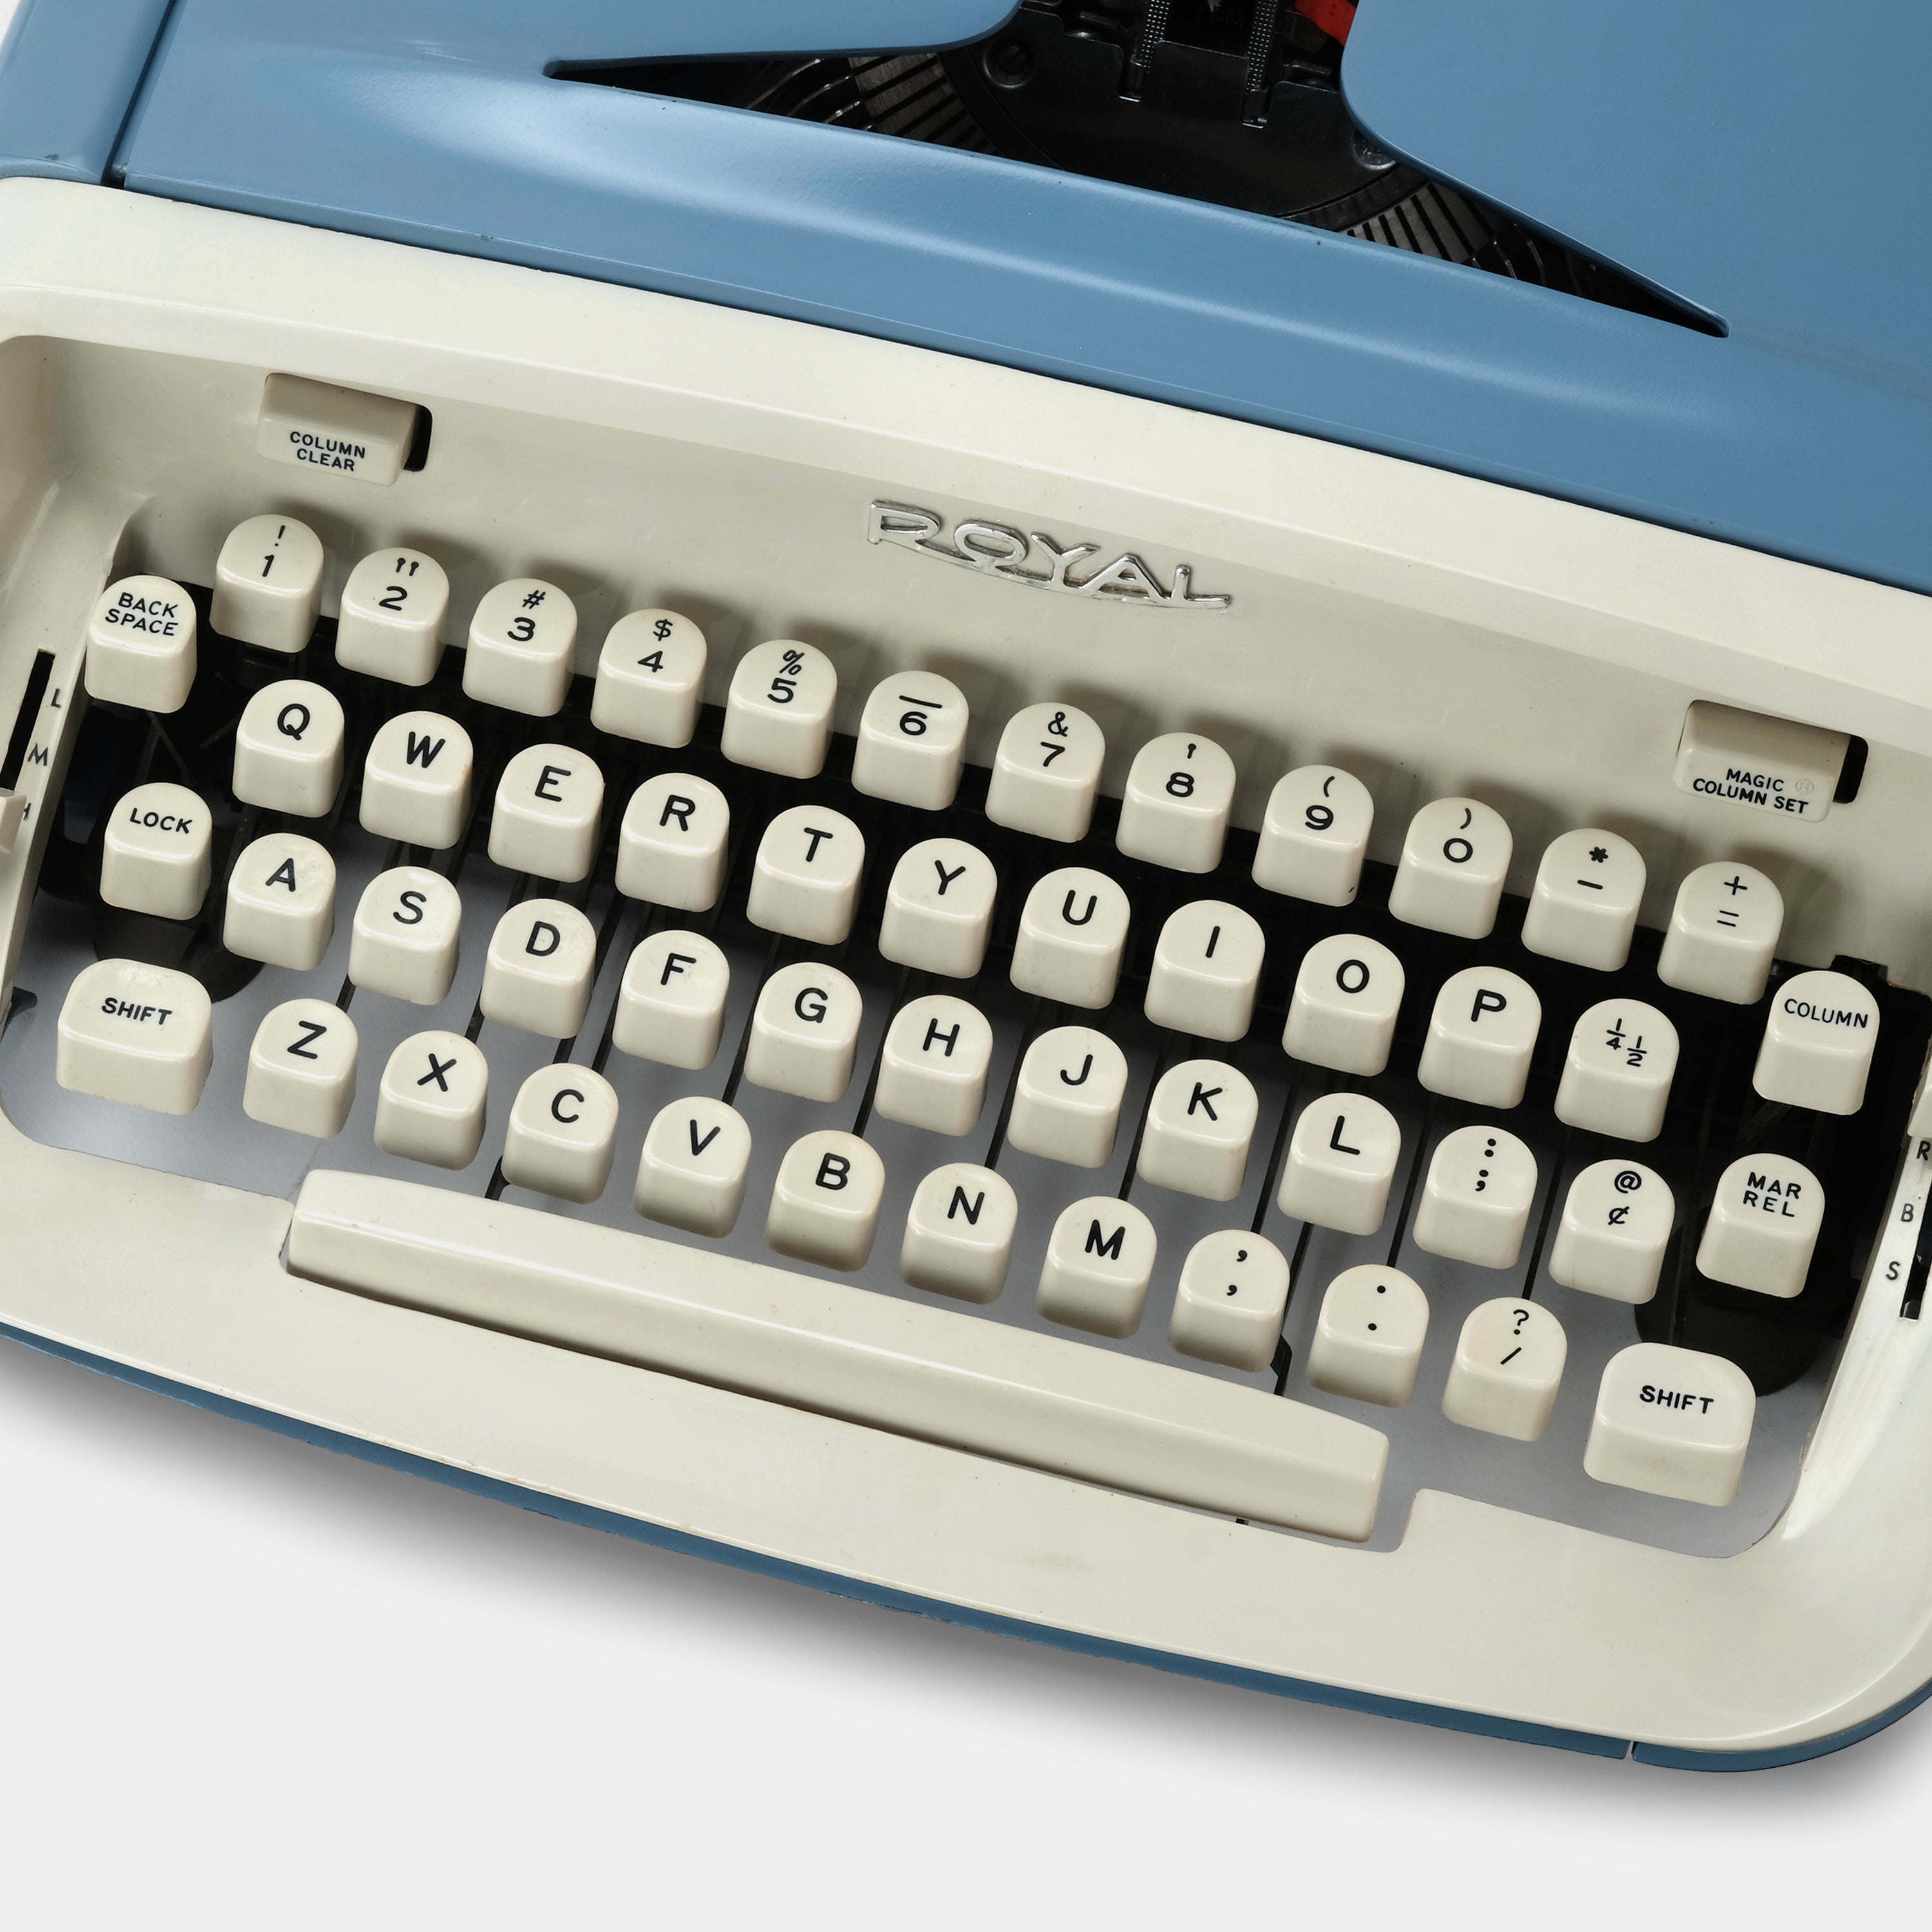 Royal Safari Blue Manual Typewriter and Case